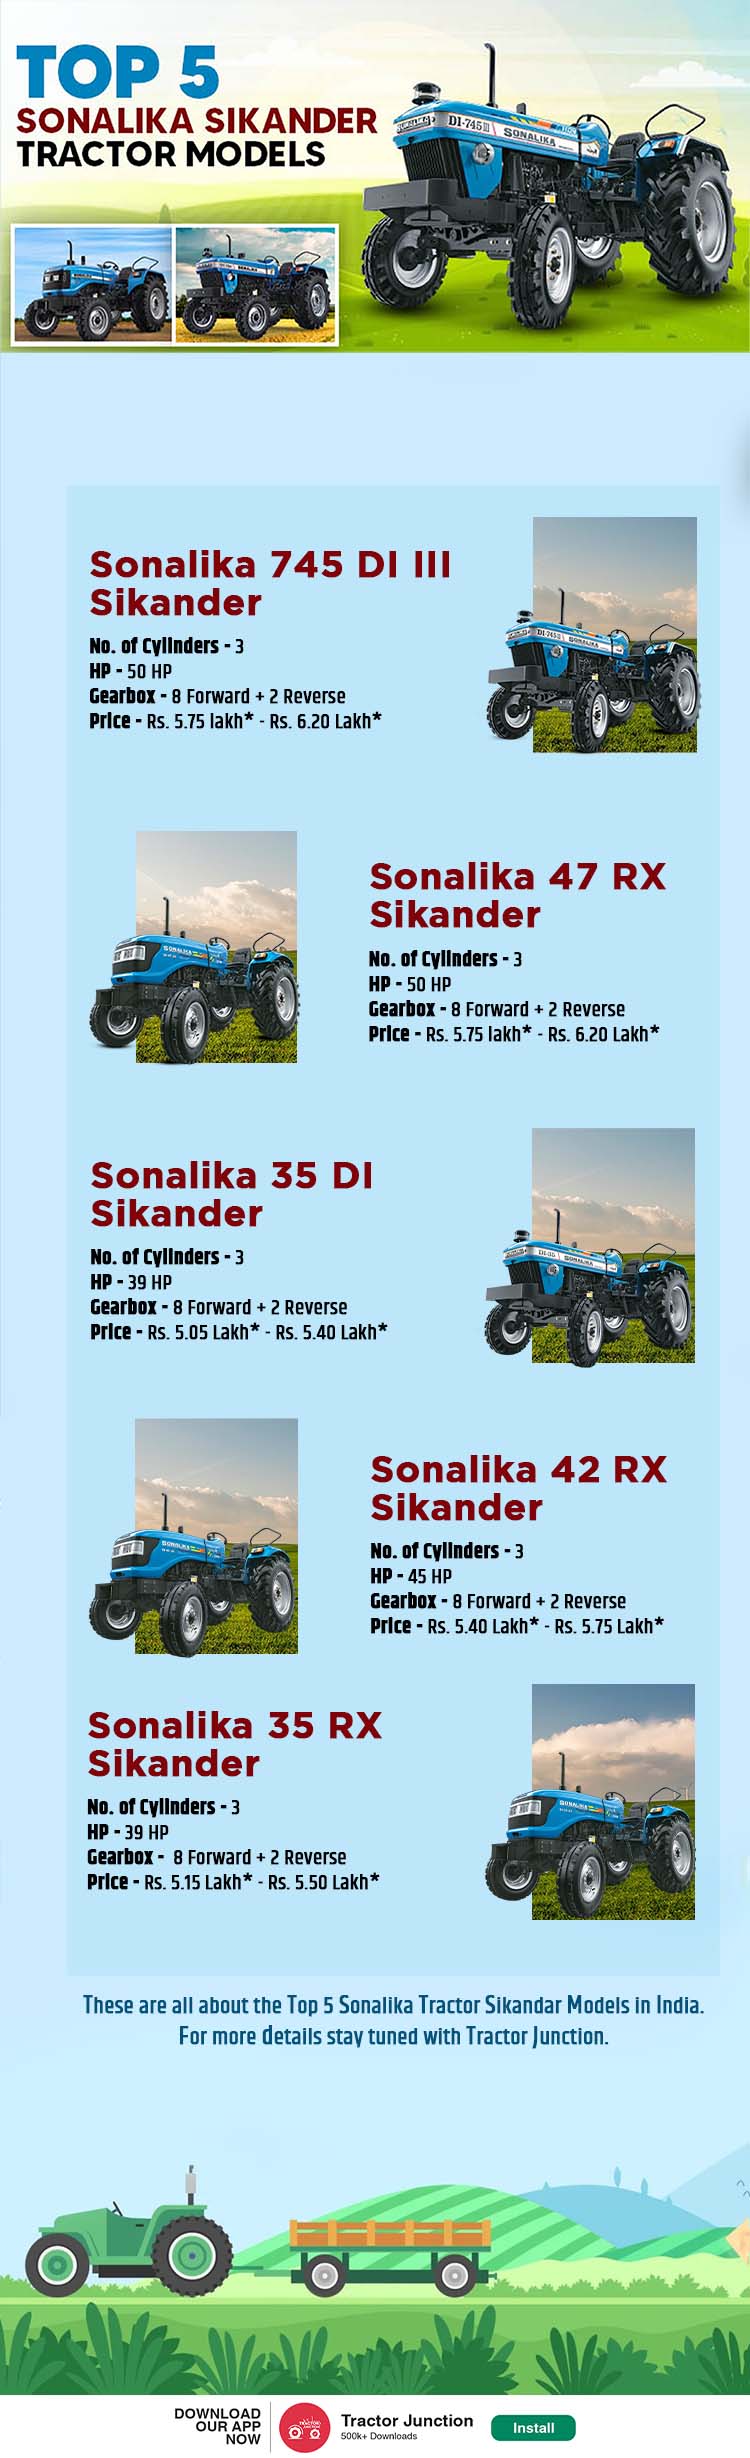 Top 5 Sonalika Sikander Tractor Models (1)